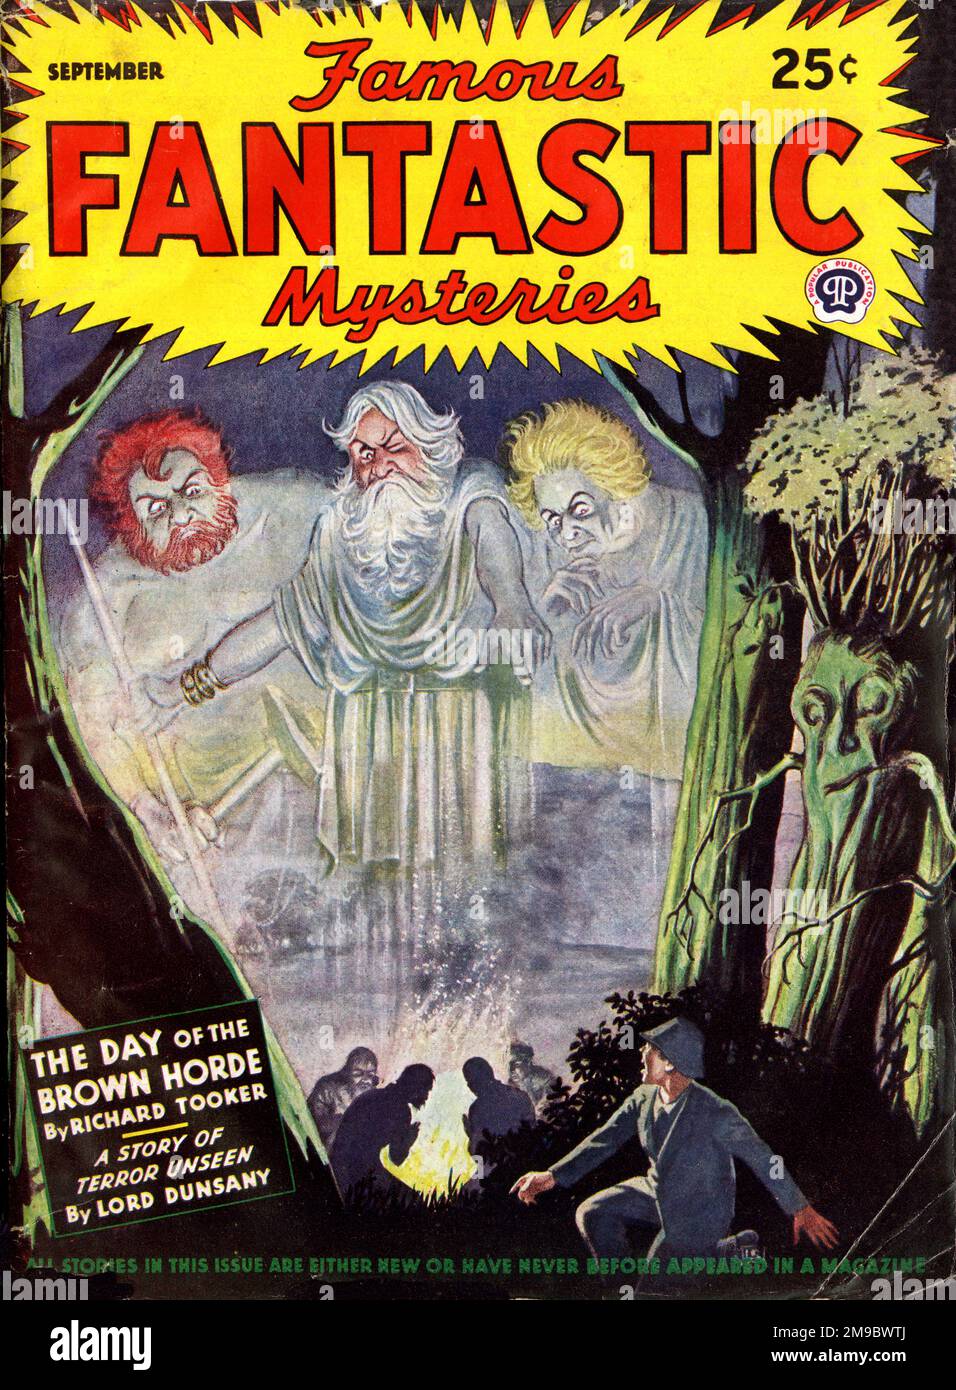 Conception de couverture, célèbres mystères fantastiques, pâte de fiction, septembre 1944 Banque D'Images